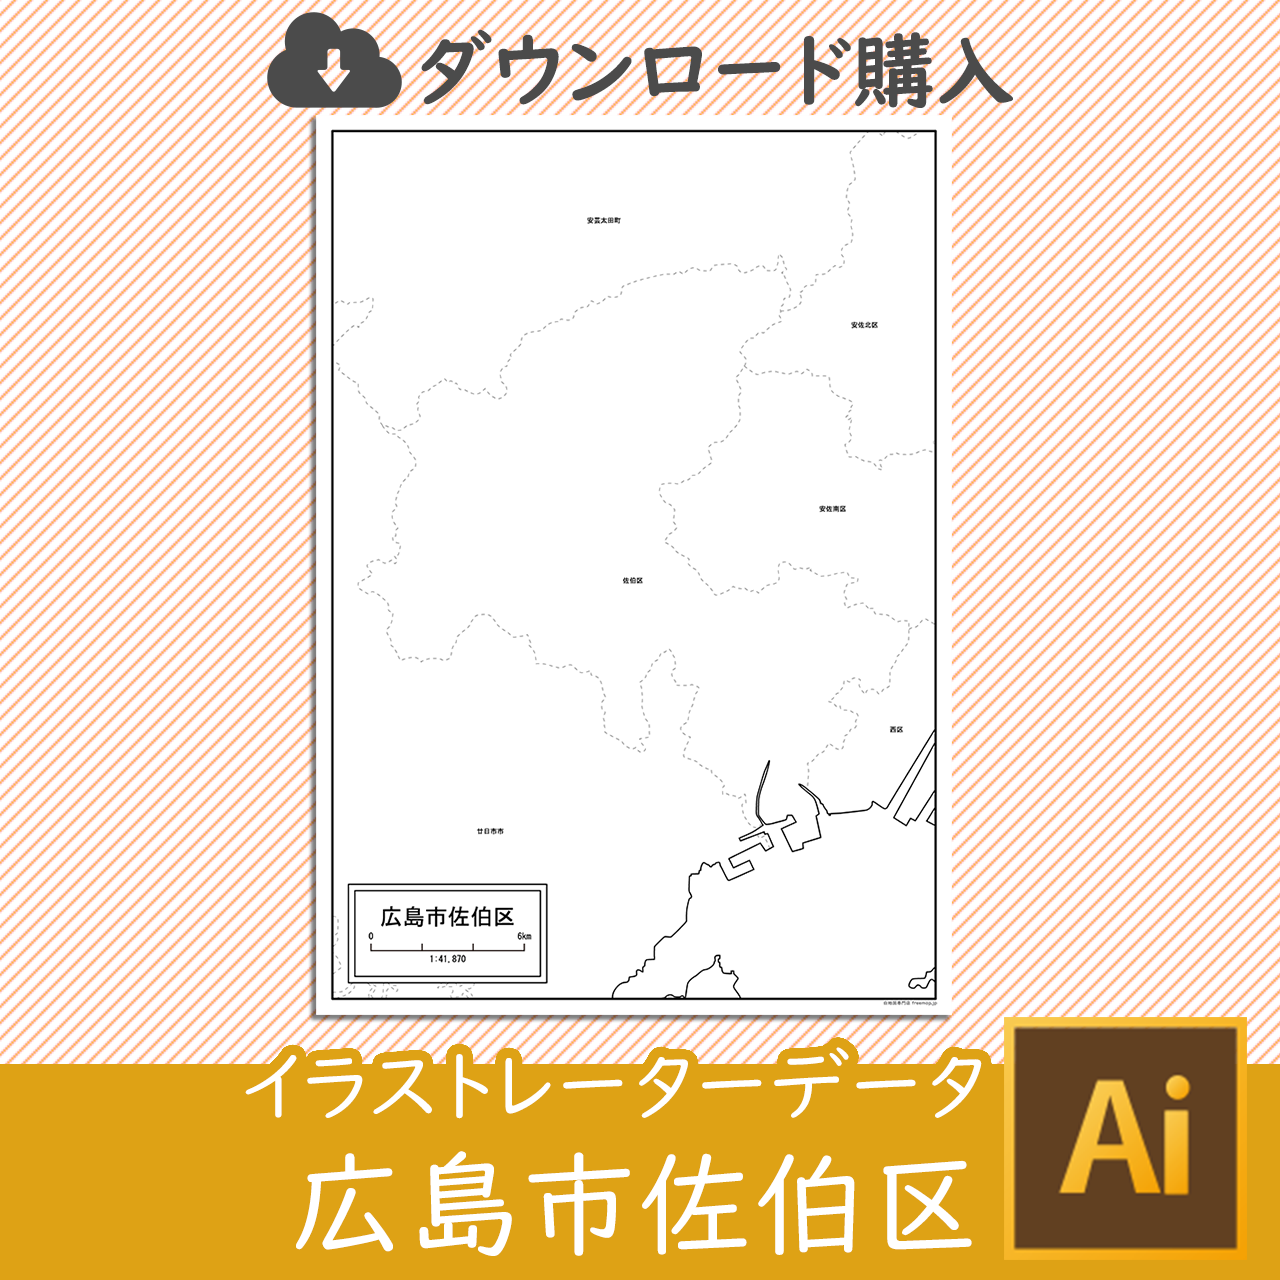 広島市佐伯区のaiデータのサムネイル画像